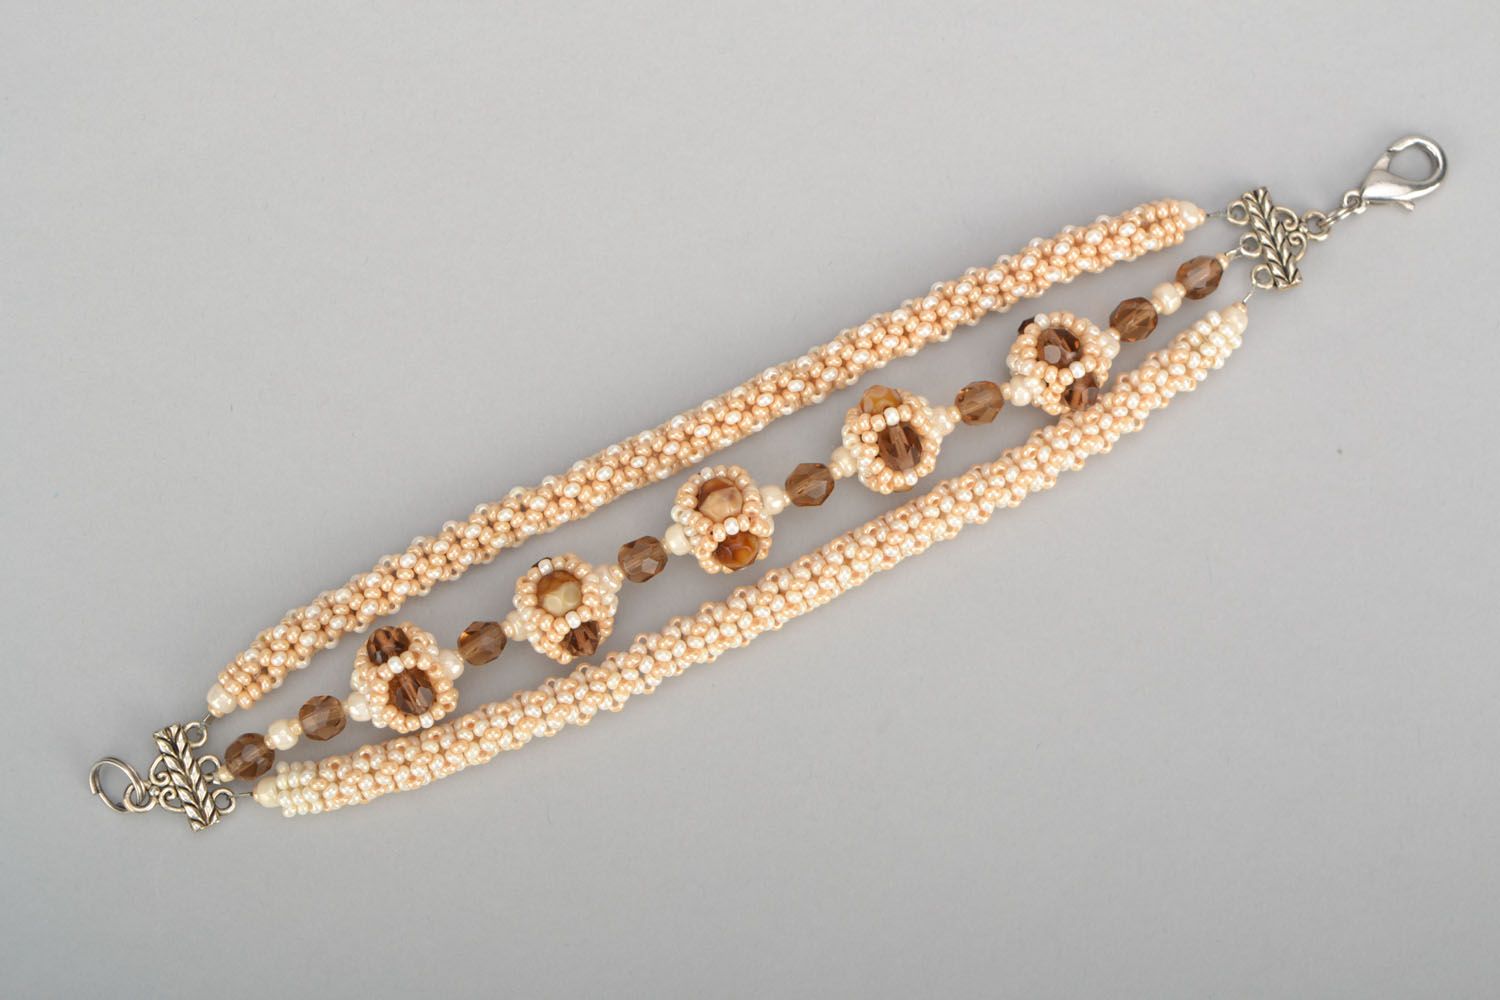 Caramel beads chain charm bracelet for girl photo 3